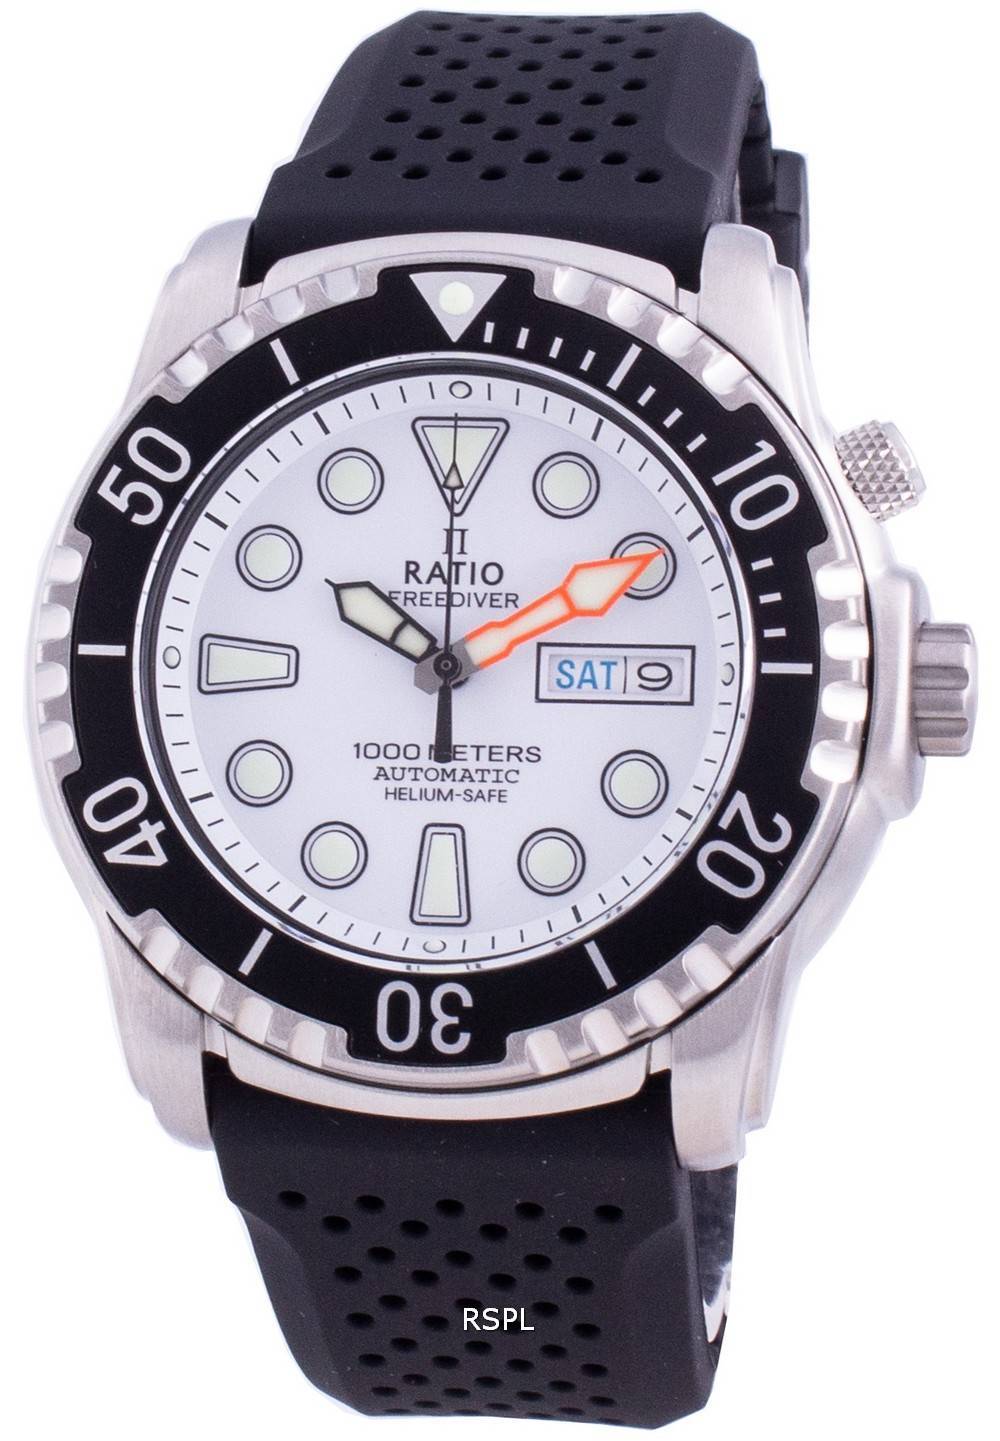 Ratio Free Diver Helium-Safe 1000M Sapphire Automatic 1068HA90-34VA-WHT Men's Watch